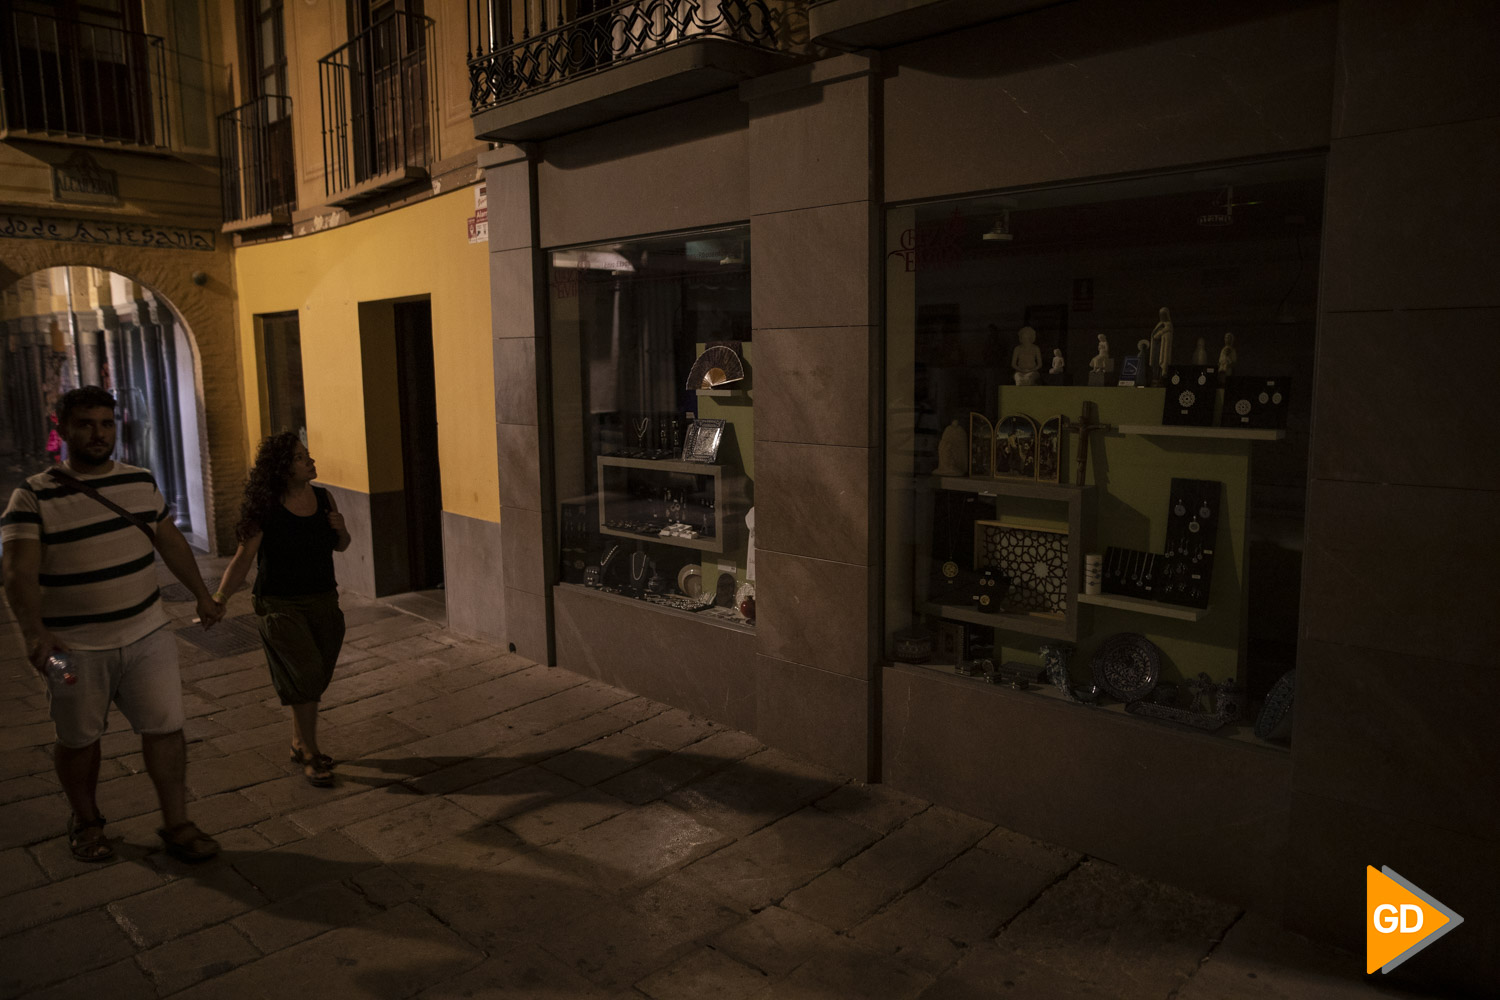 escaparate apagado Ayuntamiento de Granada y comercios apagados por la nuevas medidas de ahorro energético